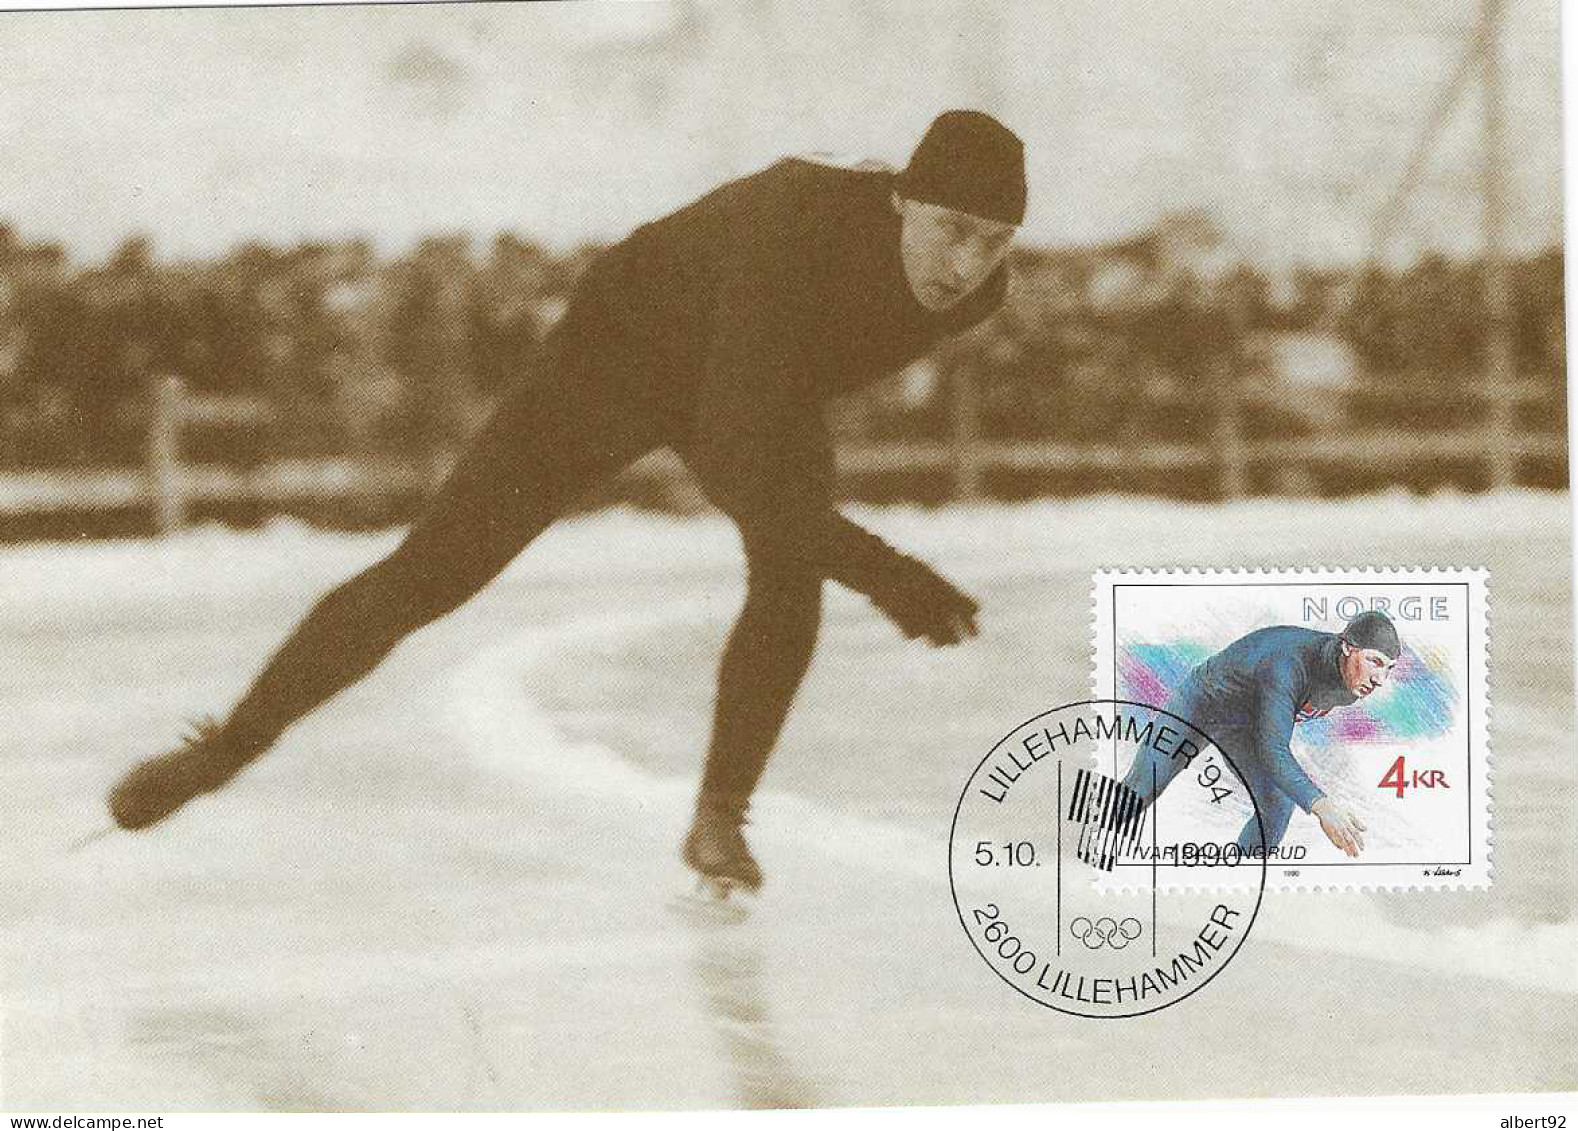 1990 Hommage à Ivar Ballangrud Patinage De Vitesse: Médaillé Or Aux Jeux Olympiques De Saint Moritz 1928 (5000m) - Hiver 1928: St-Morits